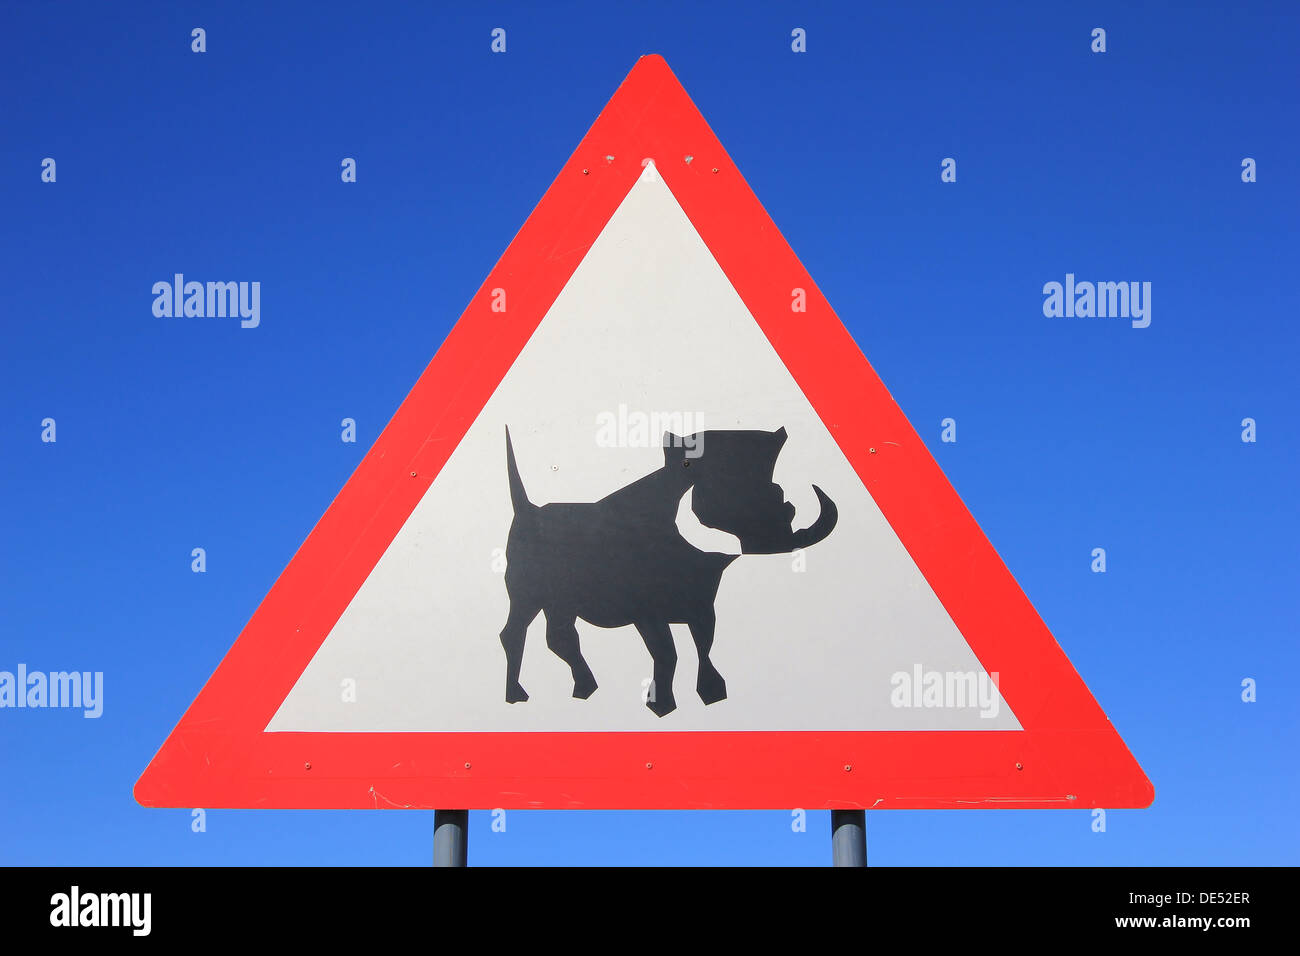 Warzenschwein - eine Straße Warnschild Warnung Fahrer und Verkehrsteilnehmer möglich und unregelmäßige Überfahrten von Tieren.  Vermeidung von Unfällen. Stockfoto